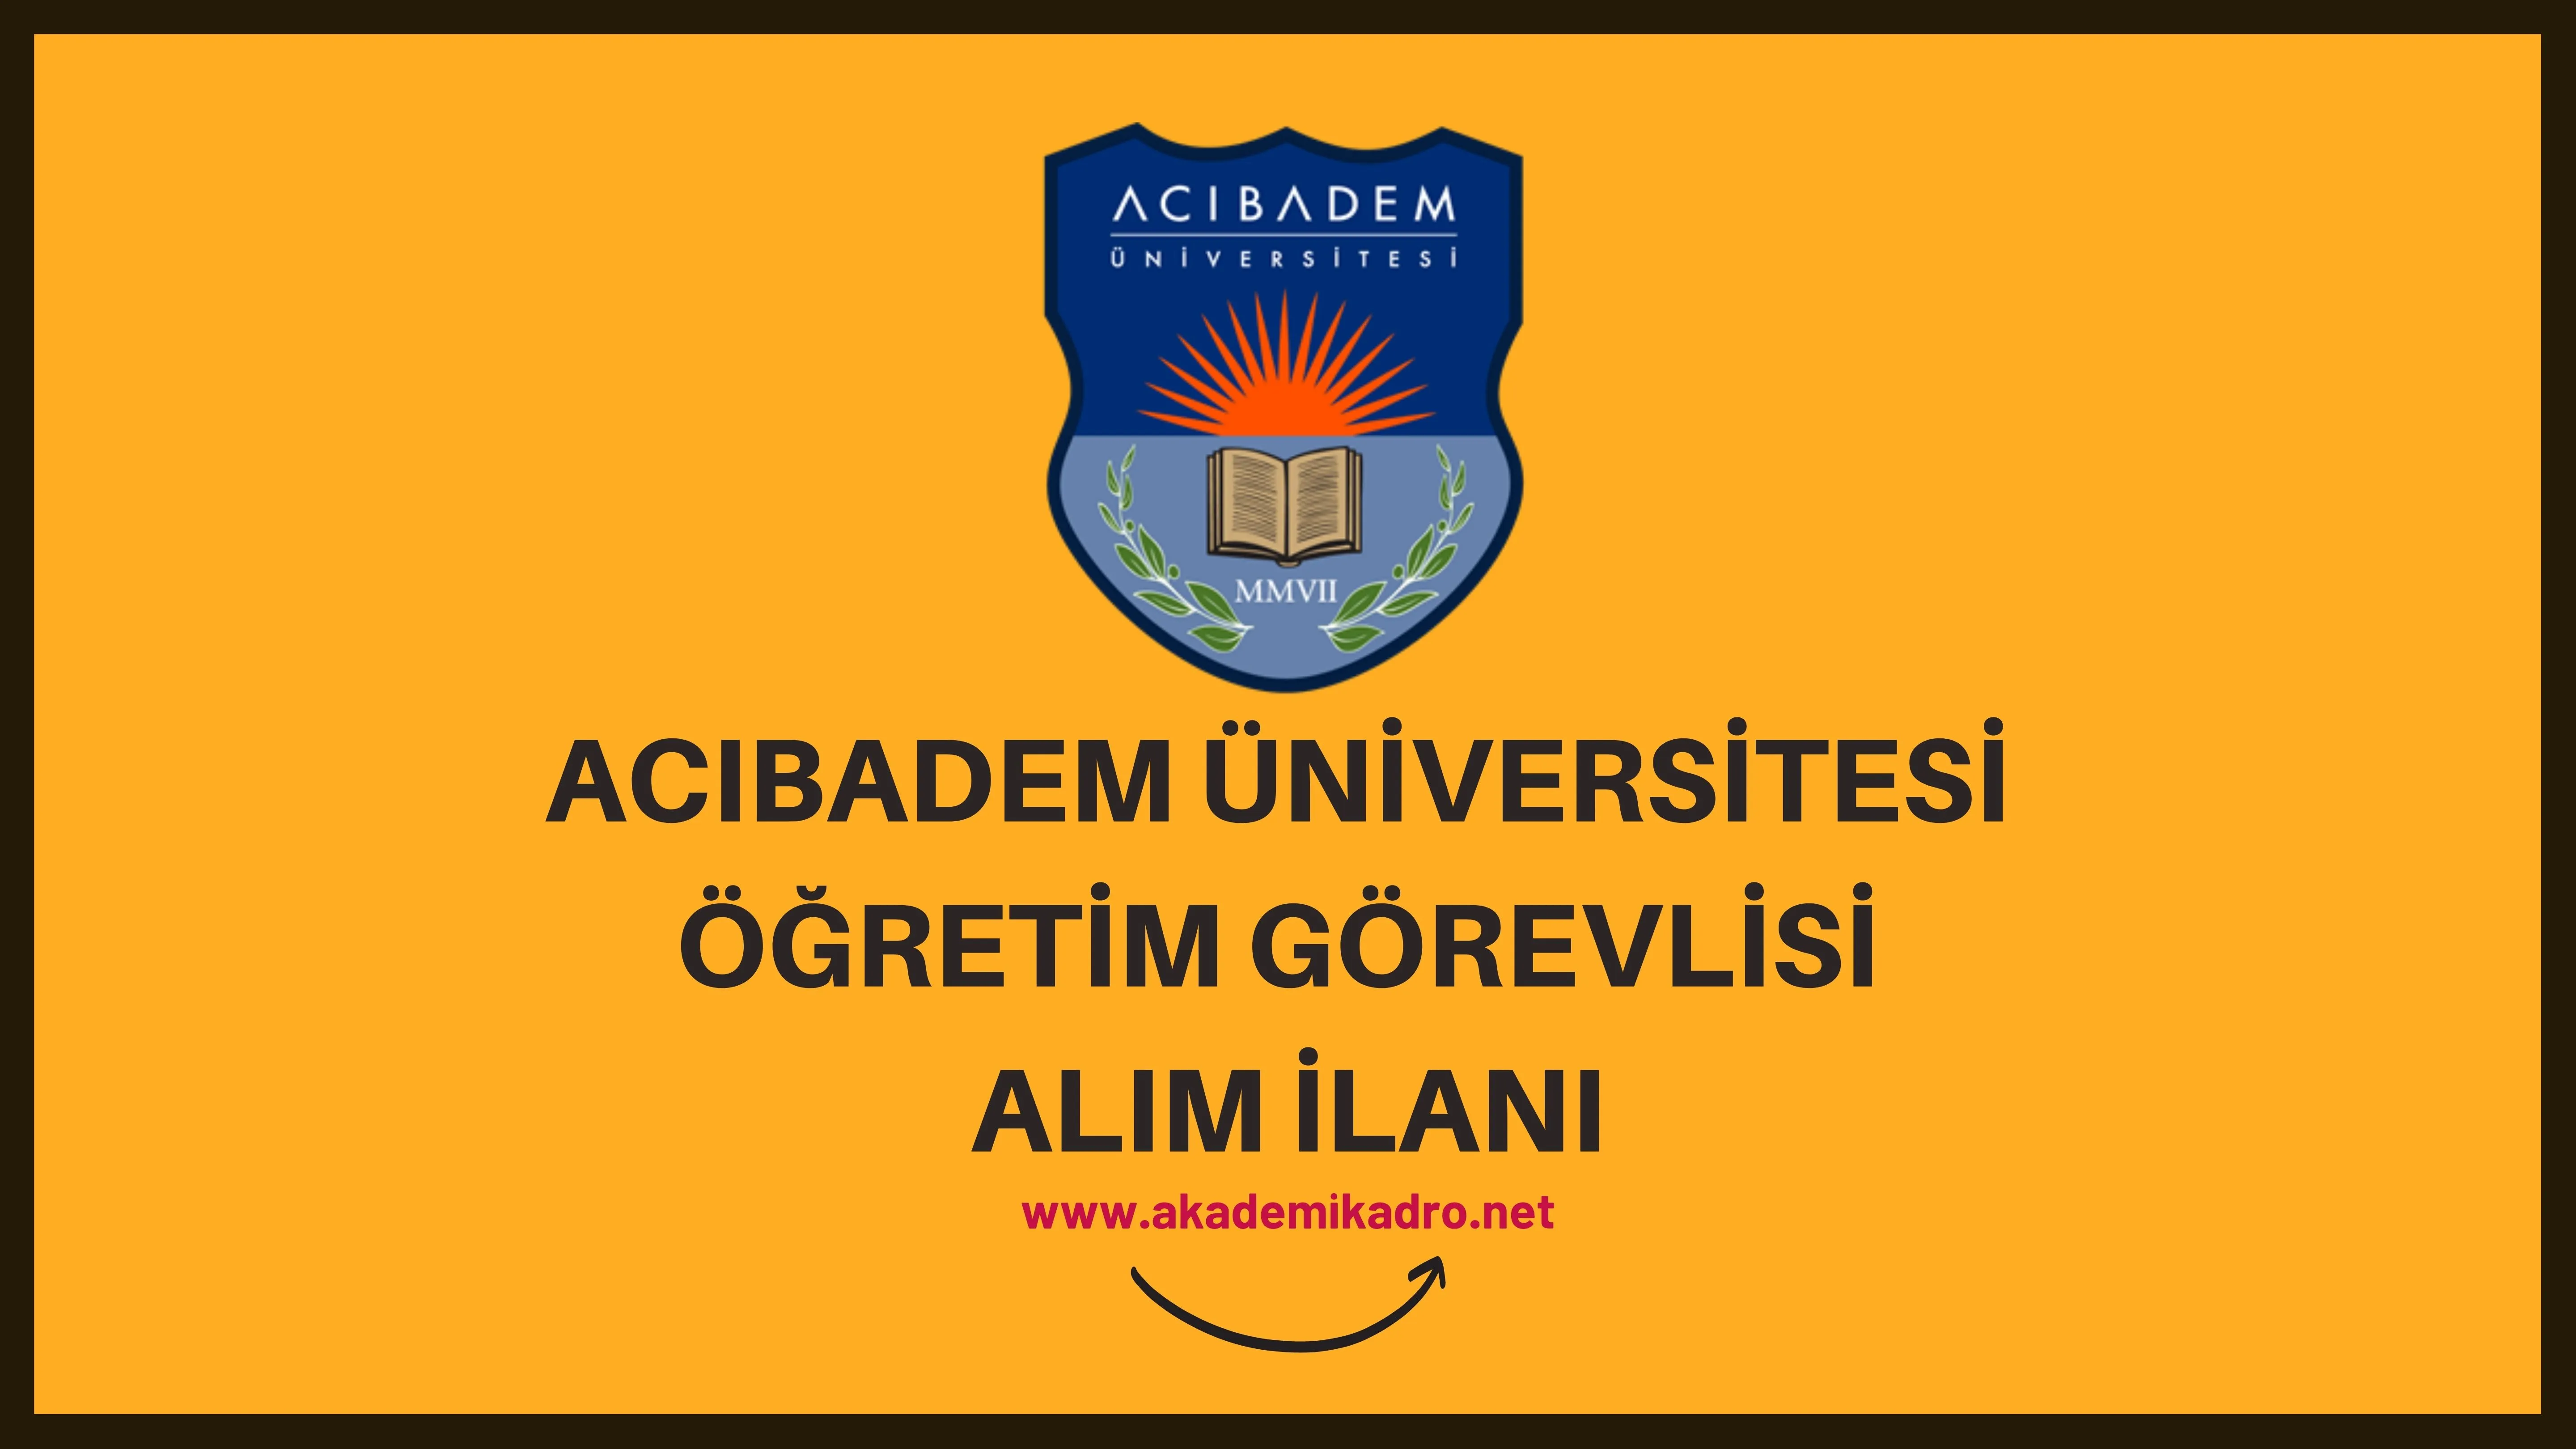 Acıbadem Mehmet Ali Aydınlar Üniversitesi 4 Öğretim görevlisi alacak. Son başvuru tarihi 30 Ocak 2023.